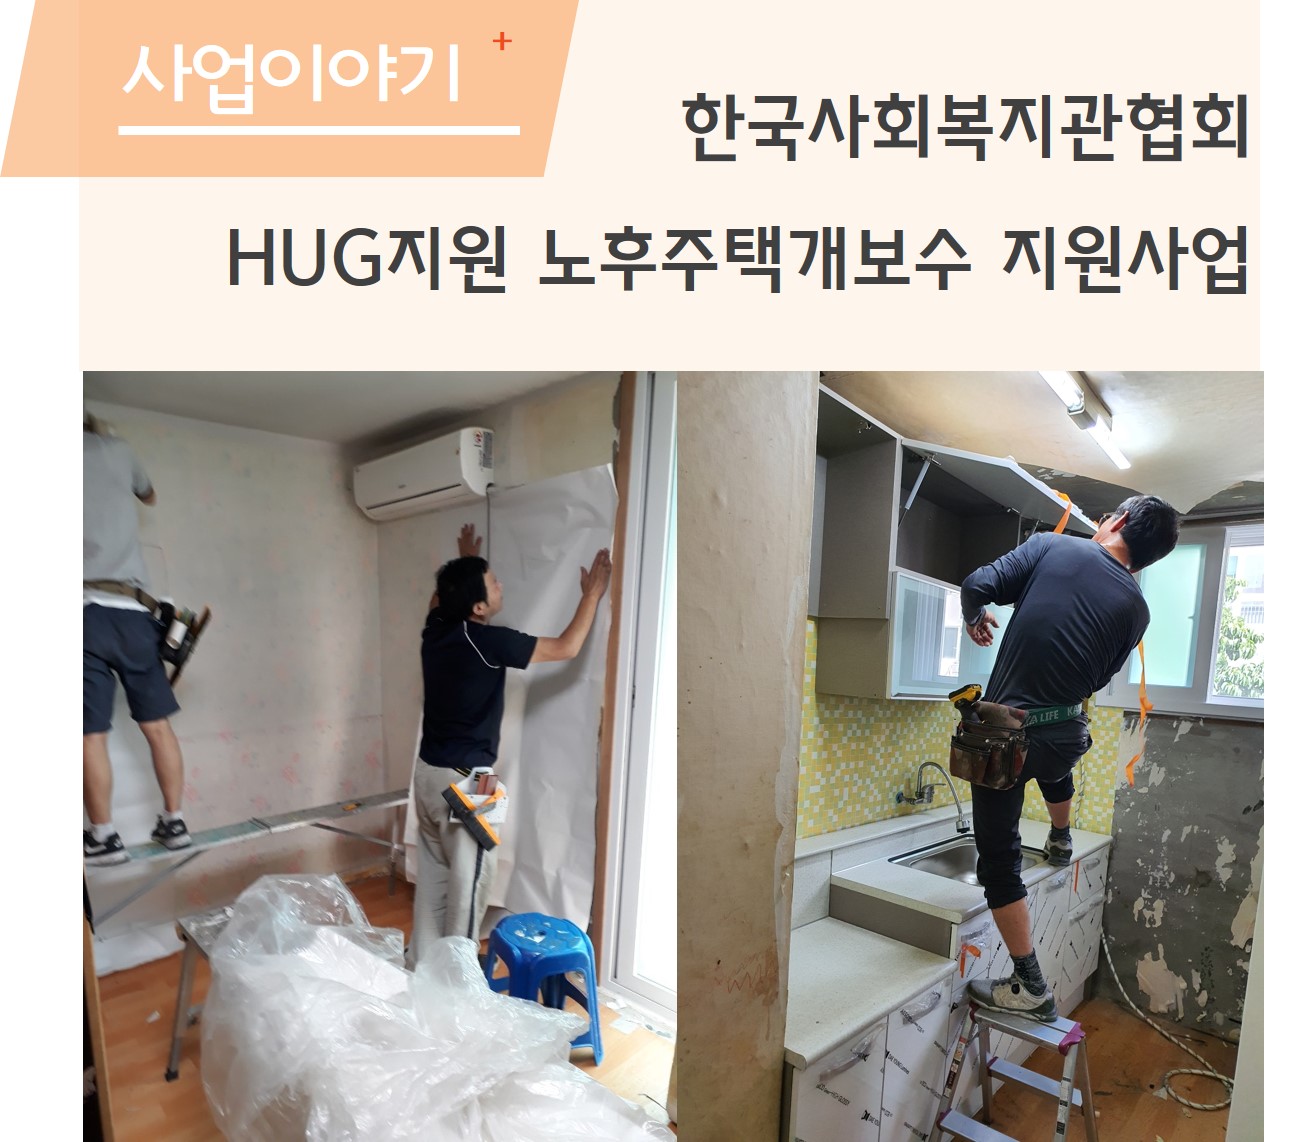 한국사회복지관협회 HUG 주택개보수지원 사업으로 리모델링을 하였습니다.